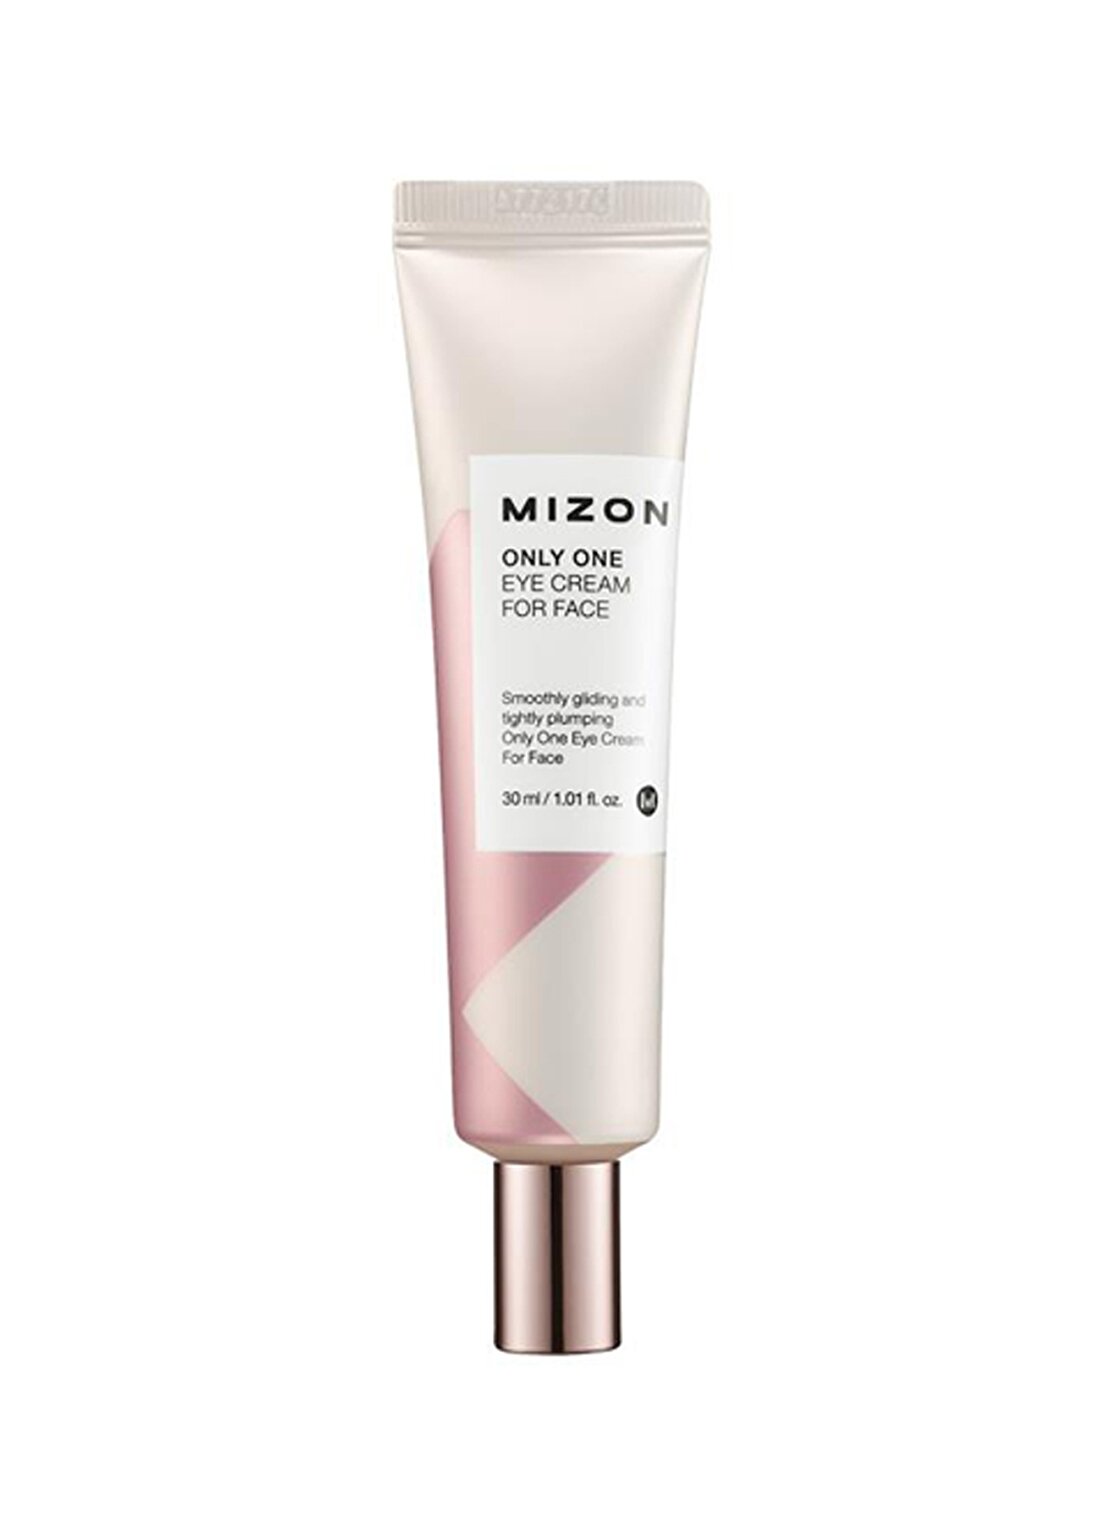 Mizon Only One Eye Cream For Face - Özel Yaşlanma Karşıtı Hepsi Bir Arada Bakımkremi